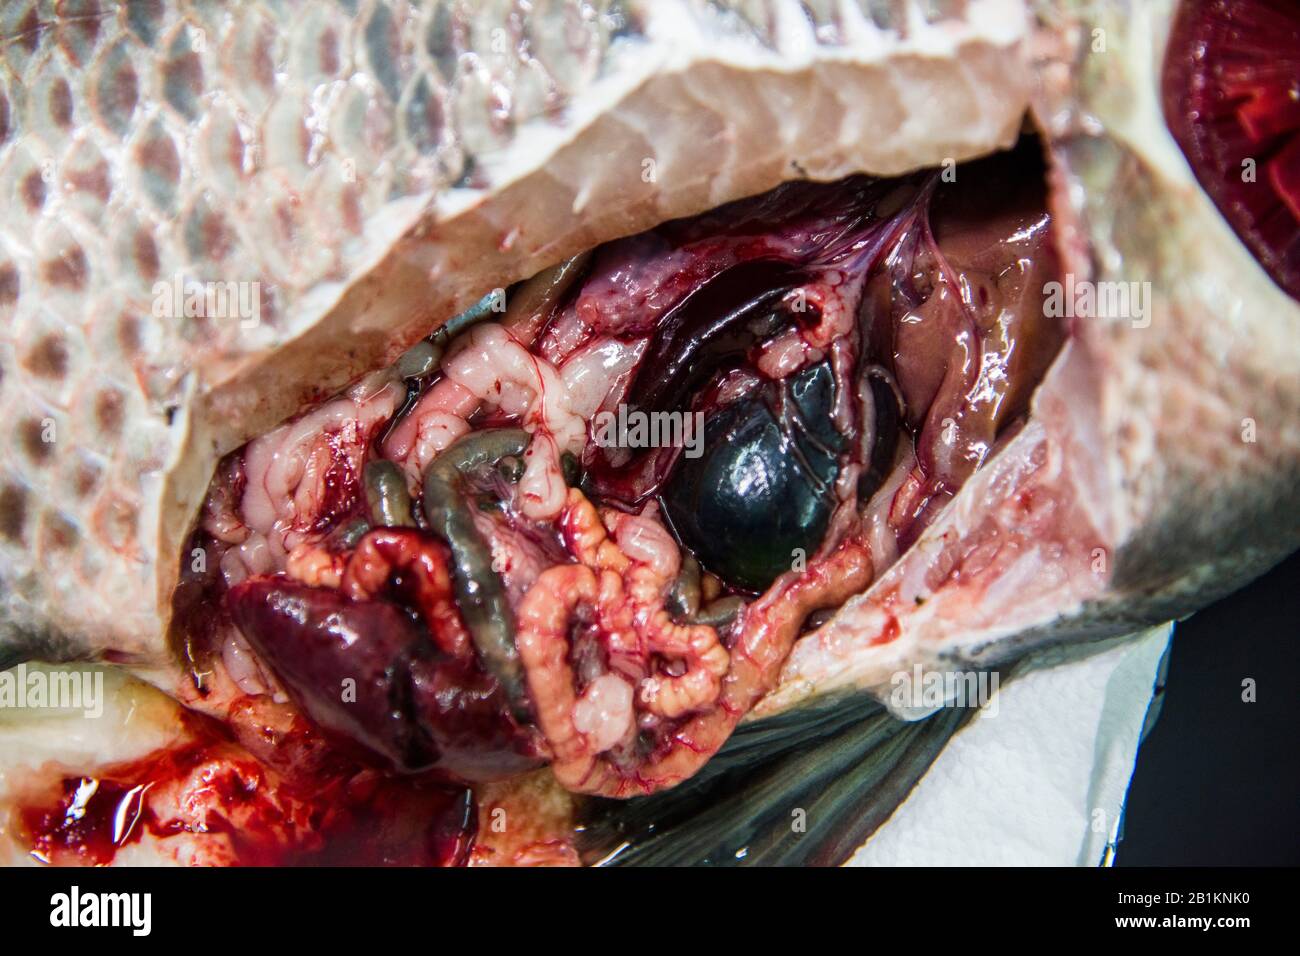 Fischgesundheitsmanagement ist ein Begriff aus der Aquakultur, der Fischerkrankungen vorbeugen soll. Anatomie verschiedener Teile von Tilapia Fisch. Stockfoto